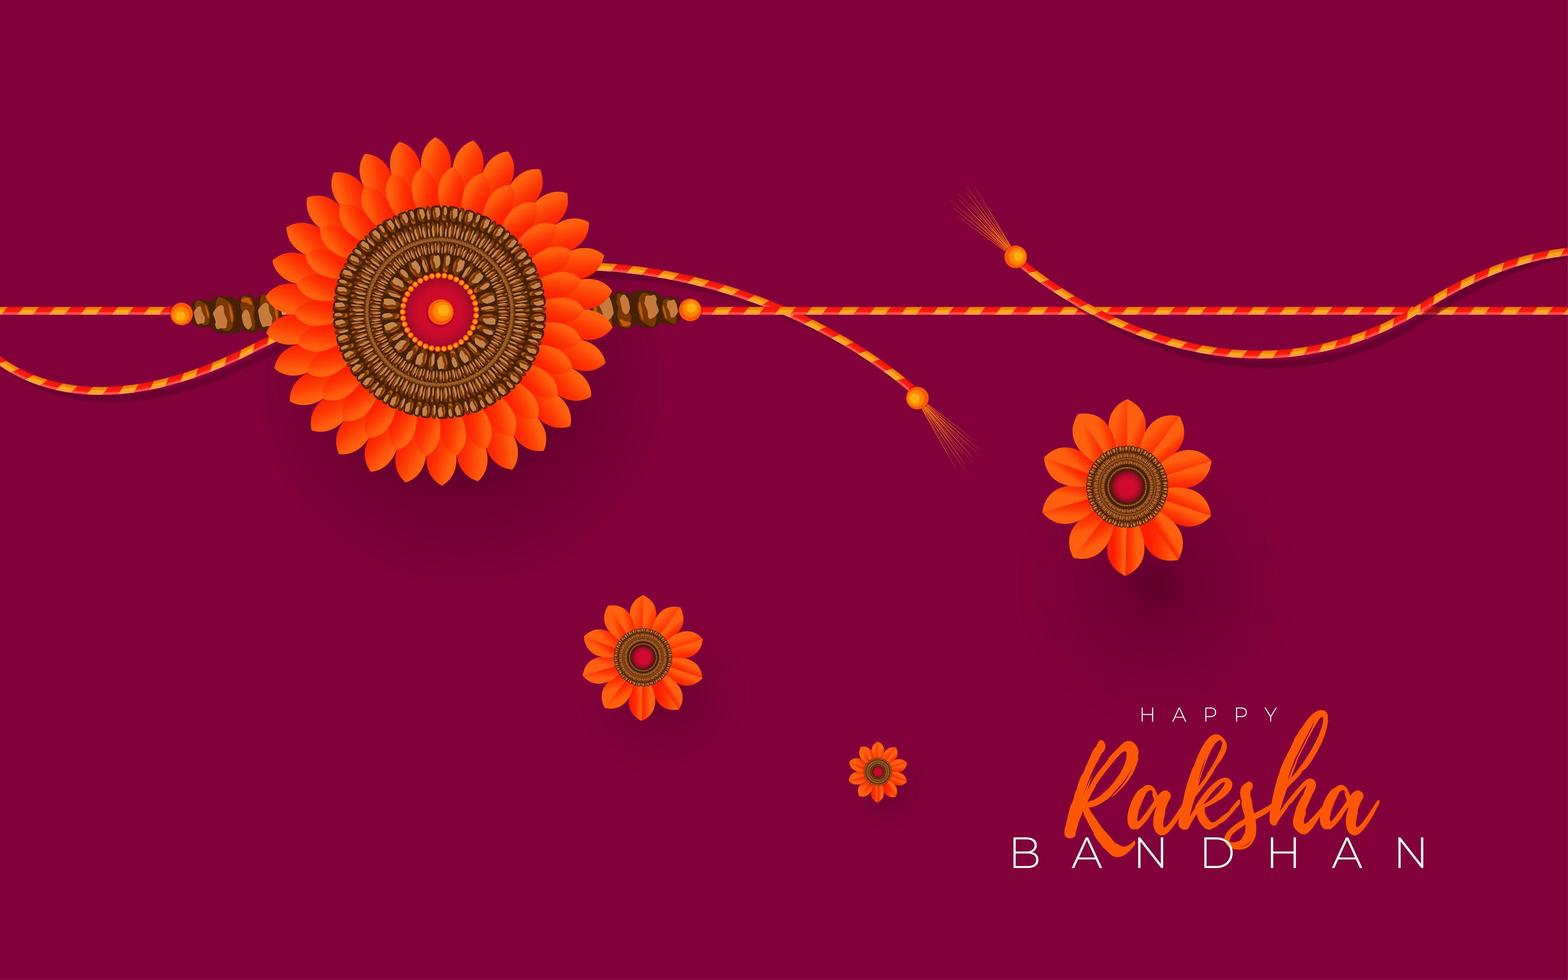 conception de carte de voeux raksha bandhan vecteur